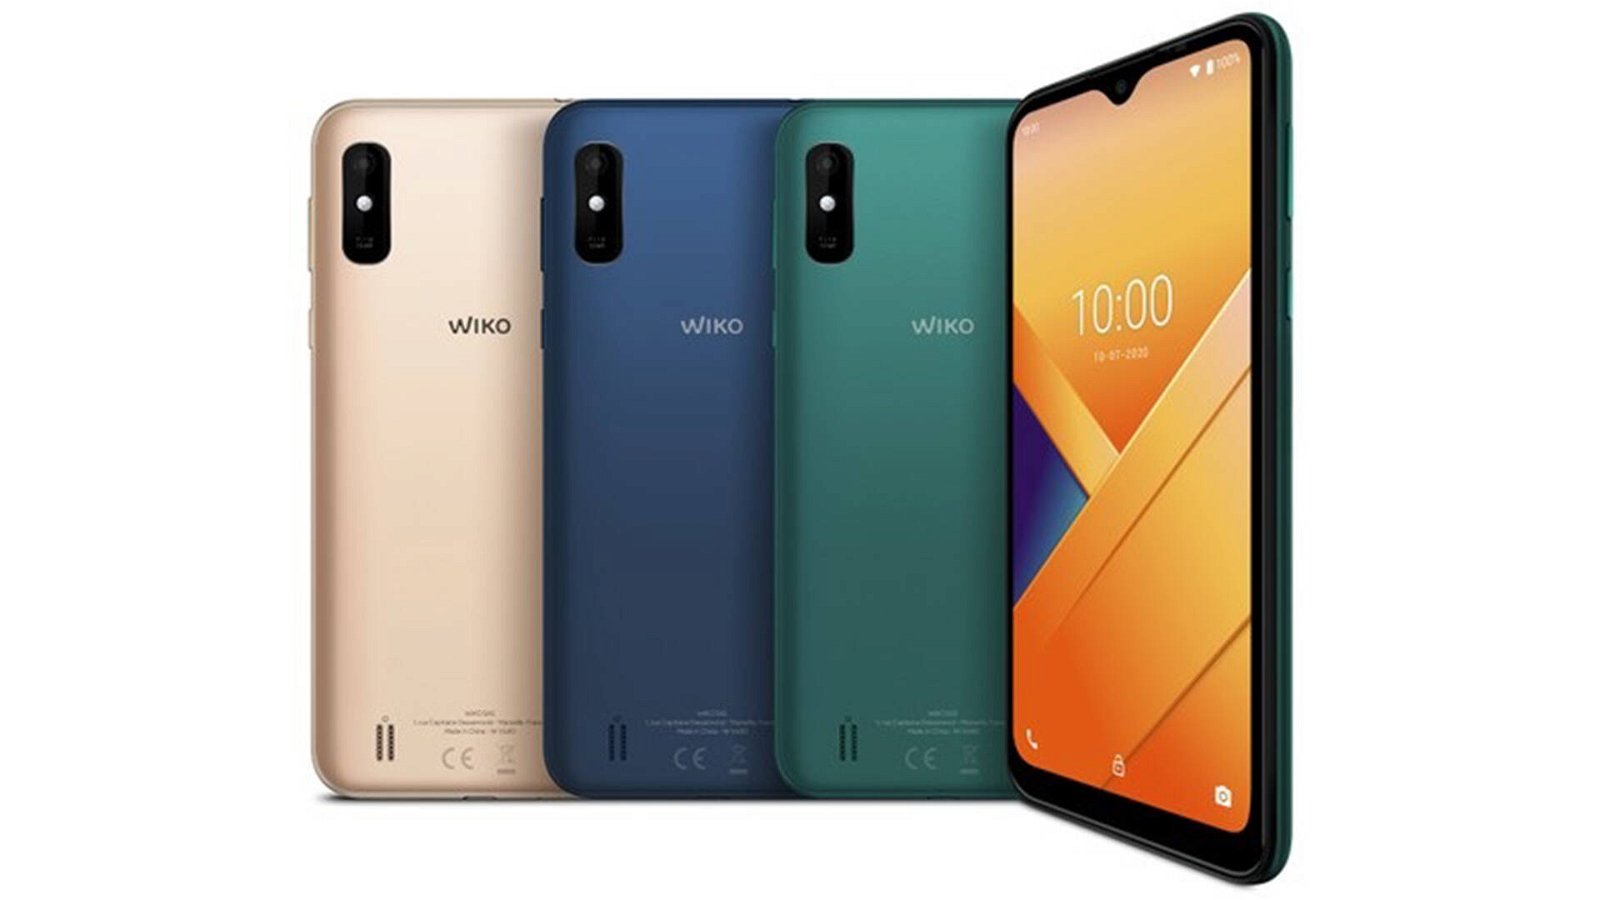 Immagine di Wiko Y81 è il nuovo smartphone economico con una batteria da 4.000 mAh